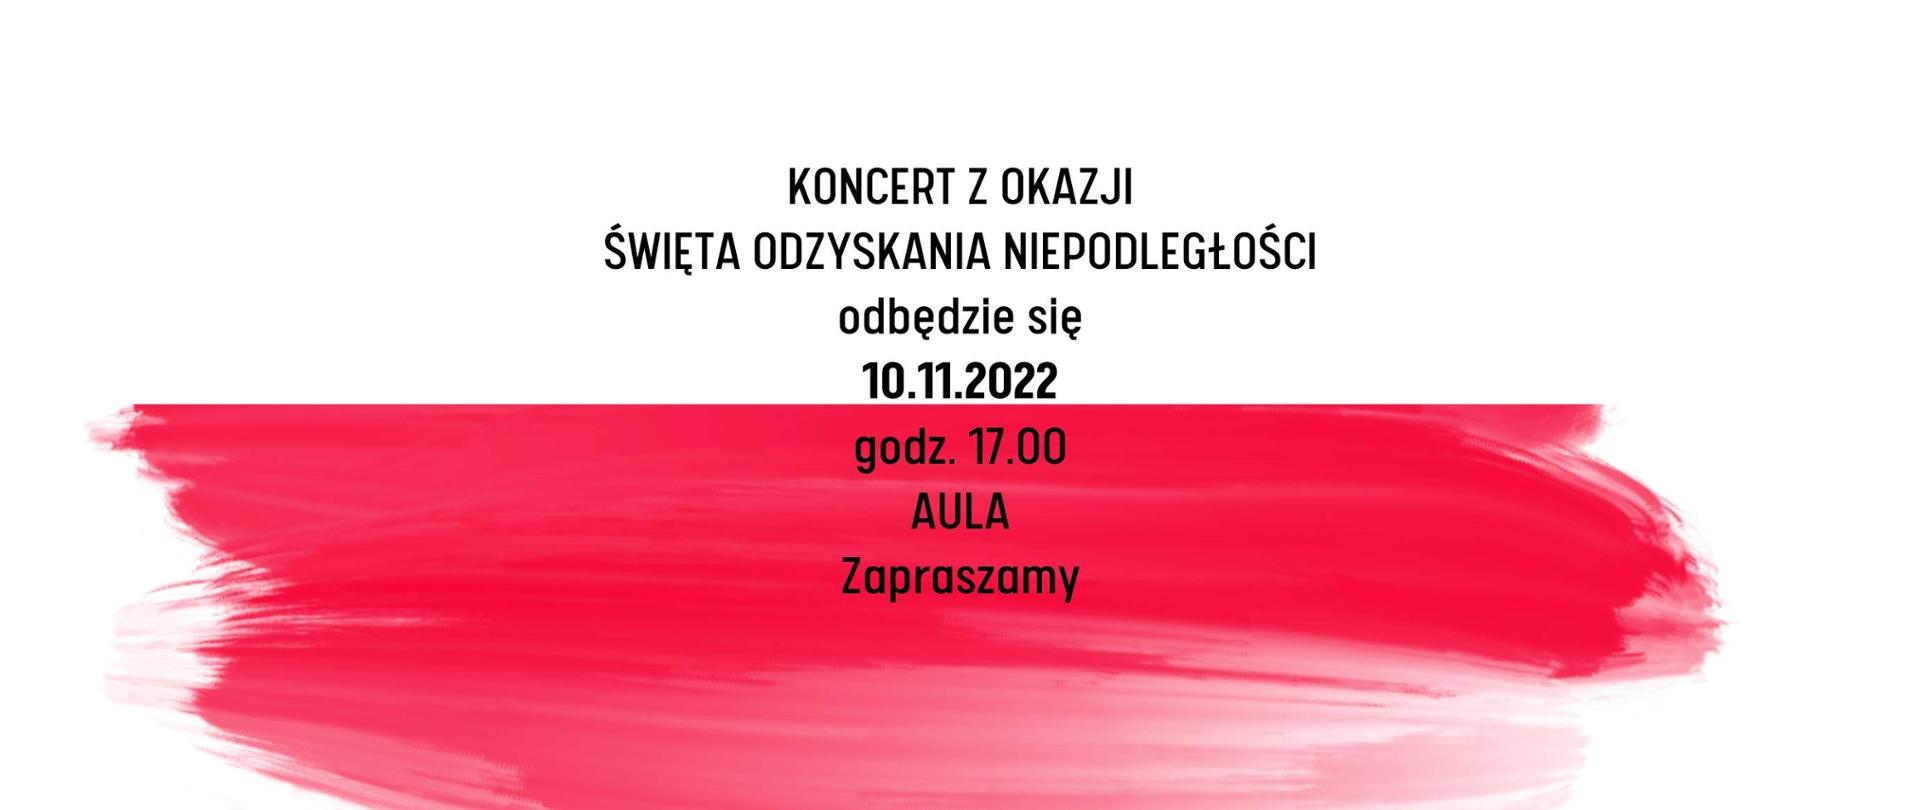 Plakat na tle flagi biało-czerwonej tekst "Koncert z okazji Święta Odzyskania Niepodległości odbędzie się 10.11.2022 godz. 17.00 Aula - zapraszamy"